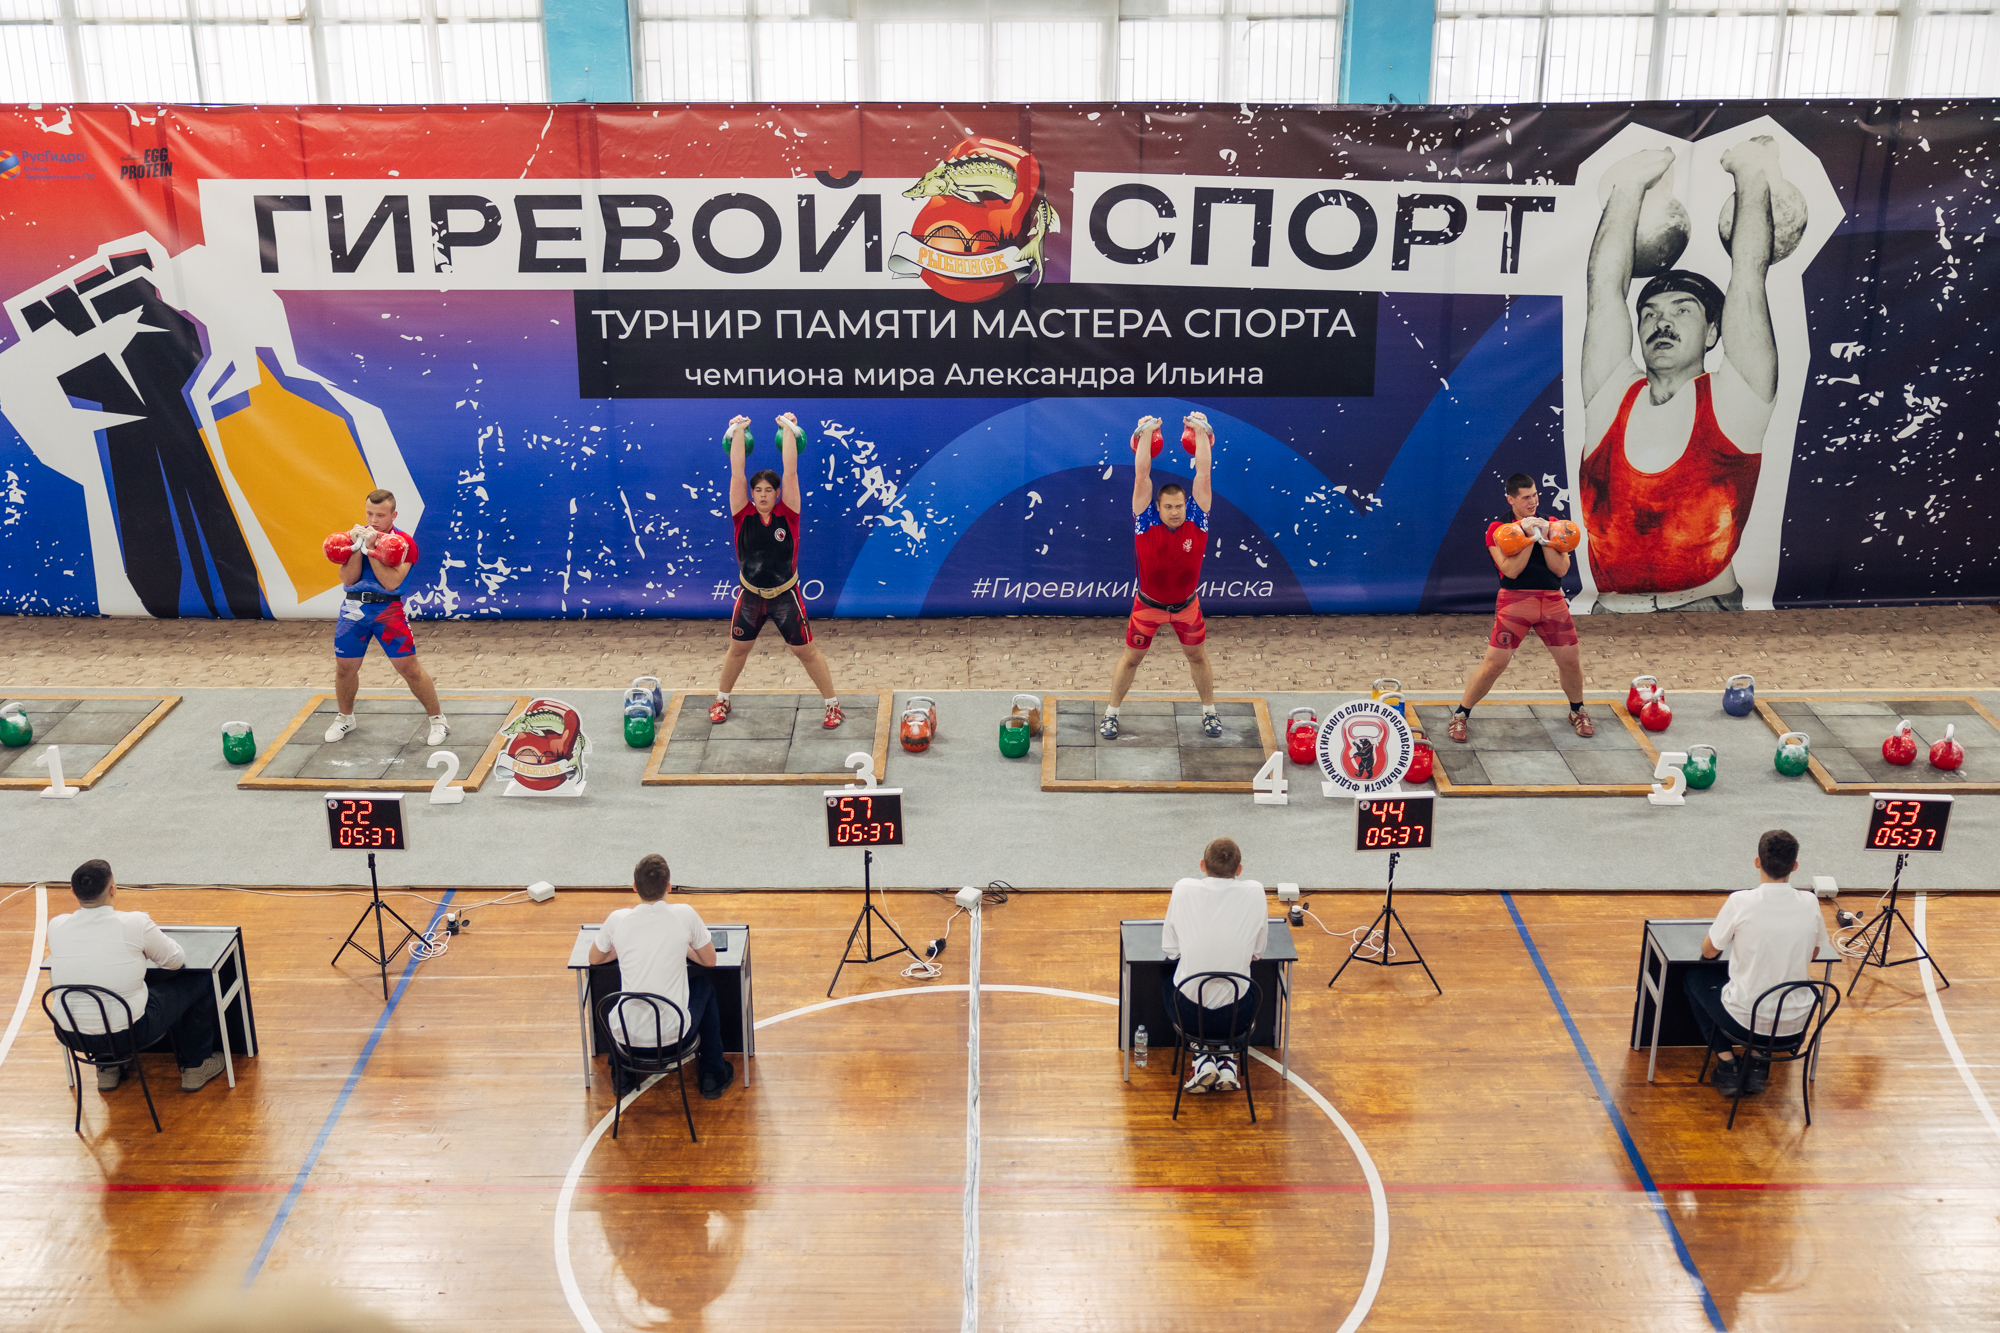 Ярославские гиревики победно завершили сезон на домашнем турнире